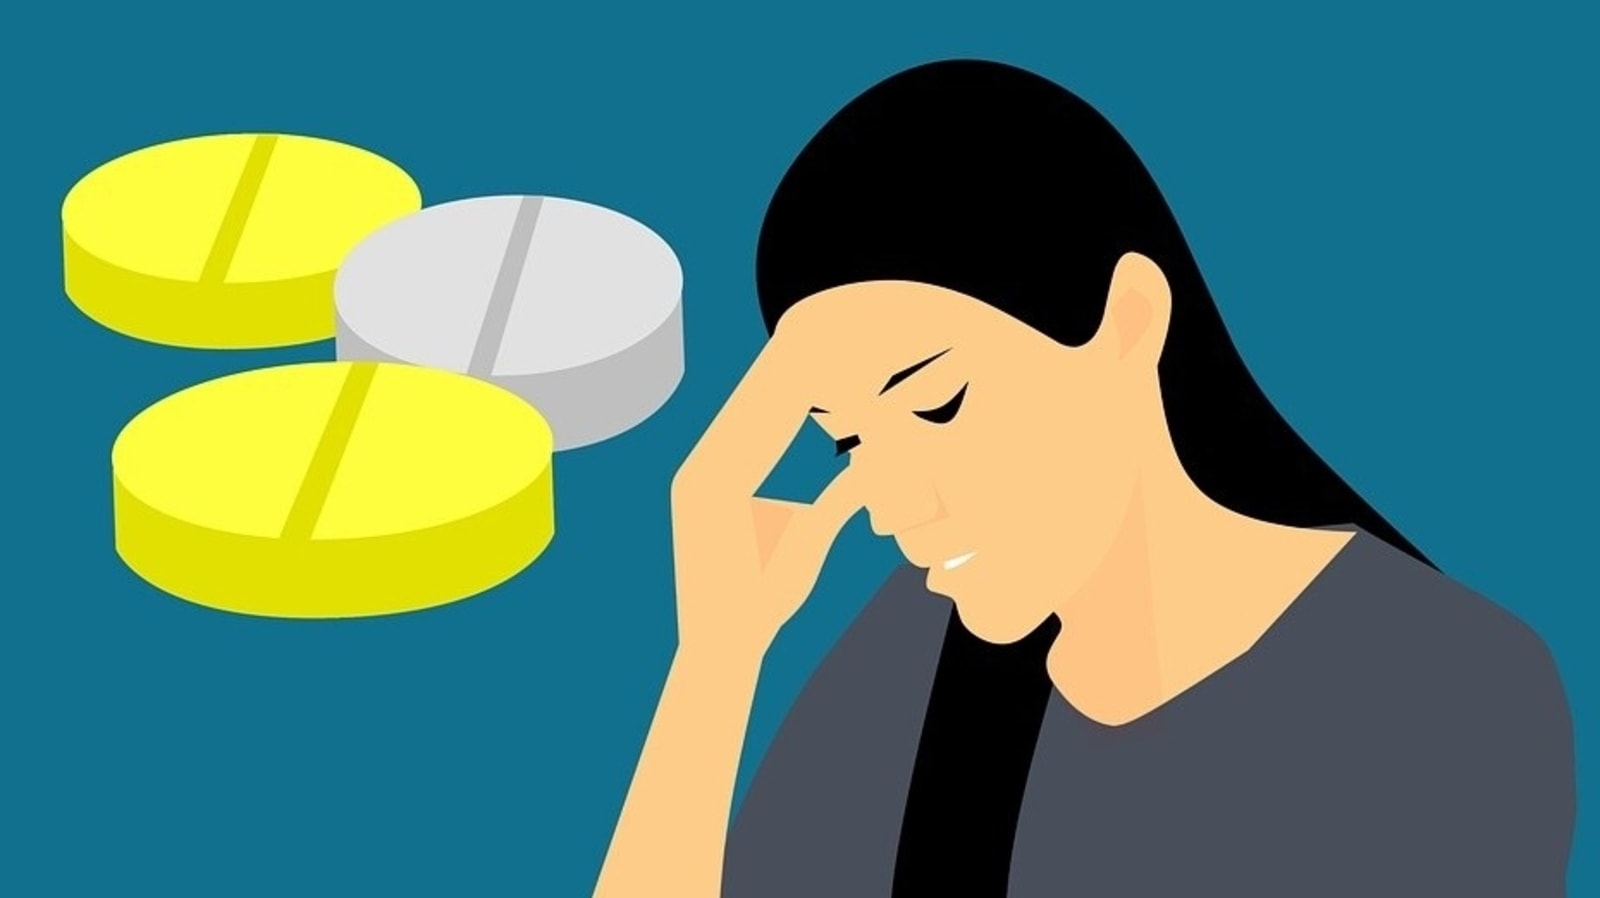 migraine-diet-3-effective-ayurvedic-tips-to-heal-migraine-pain